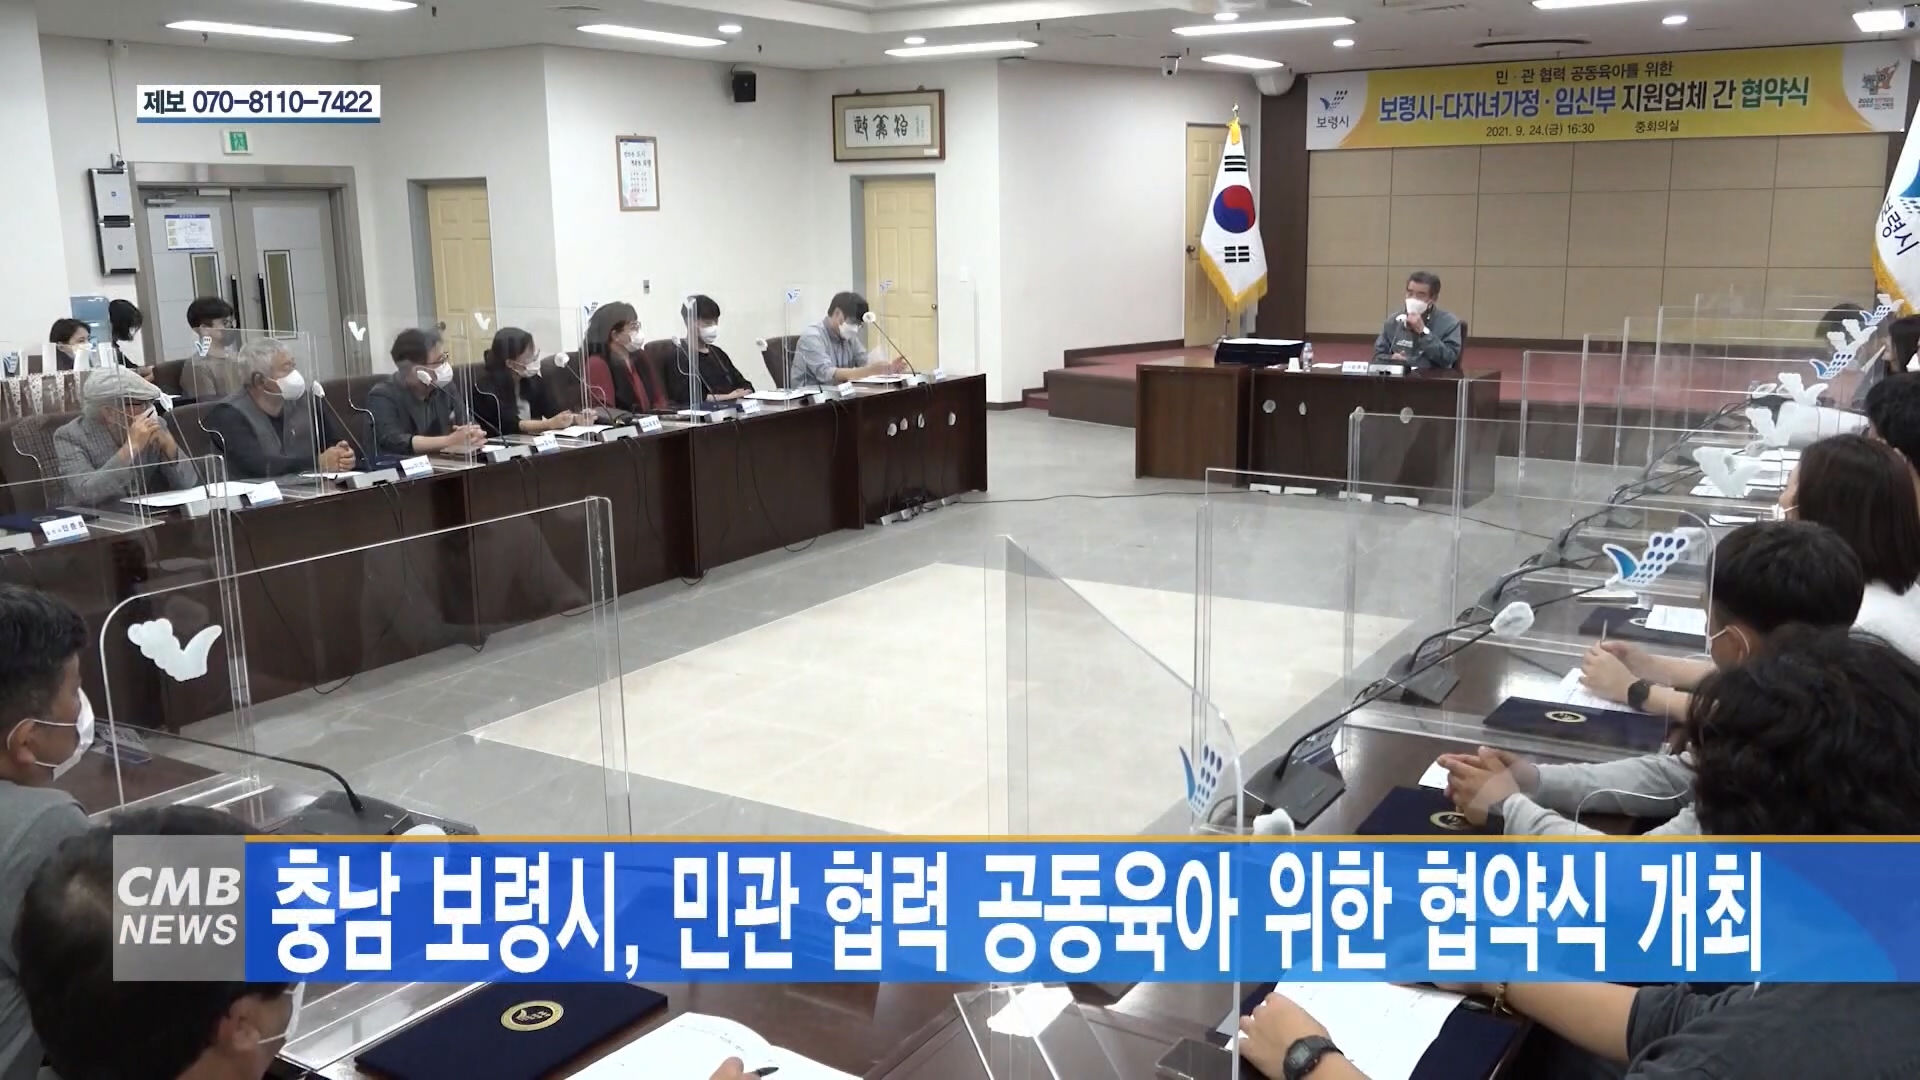 [0927 CMB 6시뉴스] 보령시 민관 협력 공동육아를 위한 협약식 개최